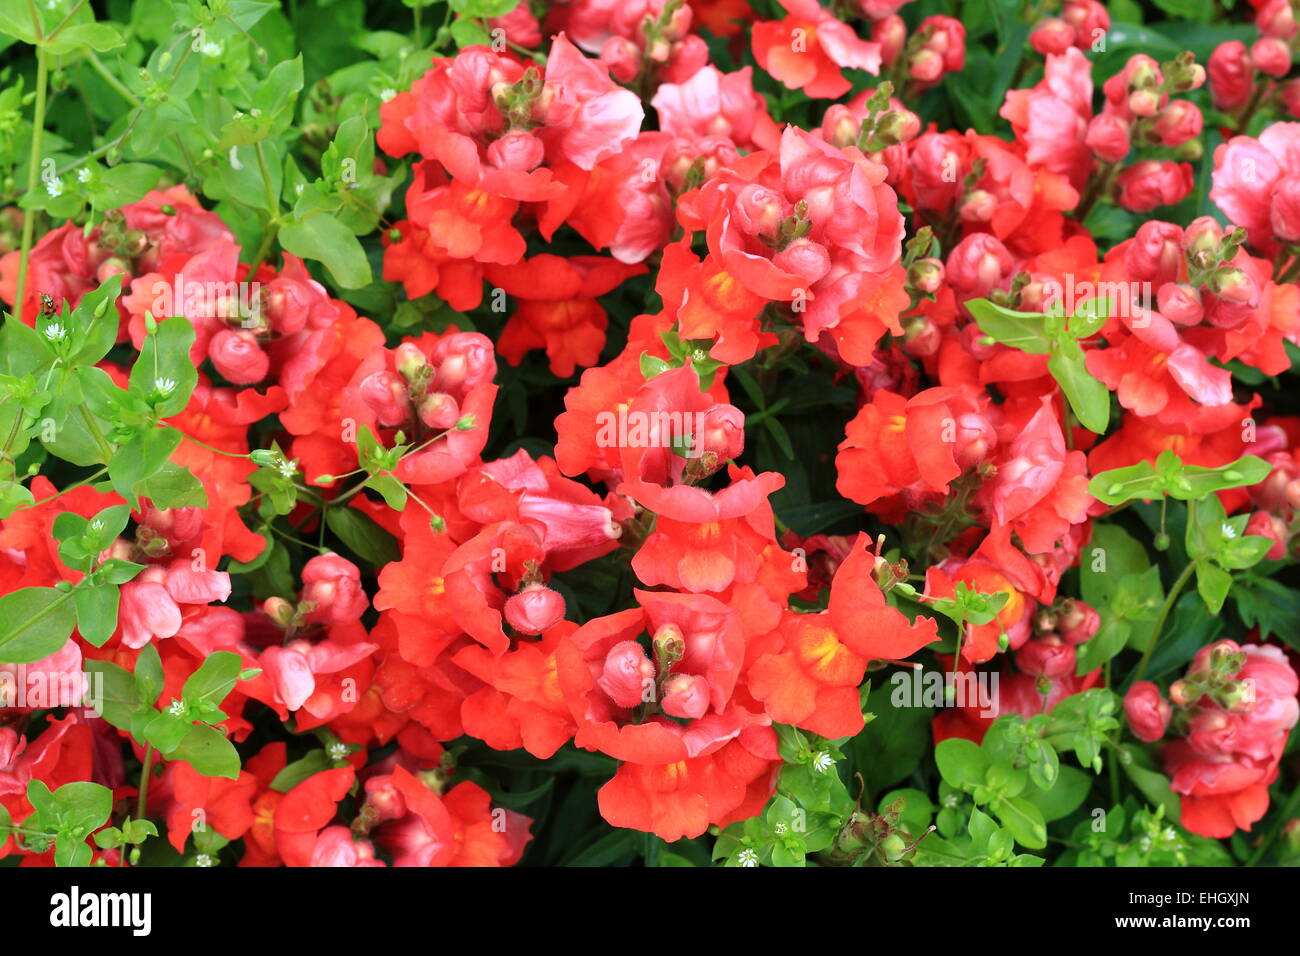 Garden snapdragon red coloured Stock Photo